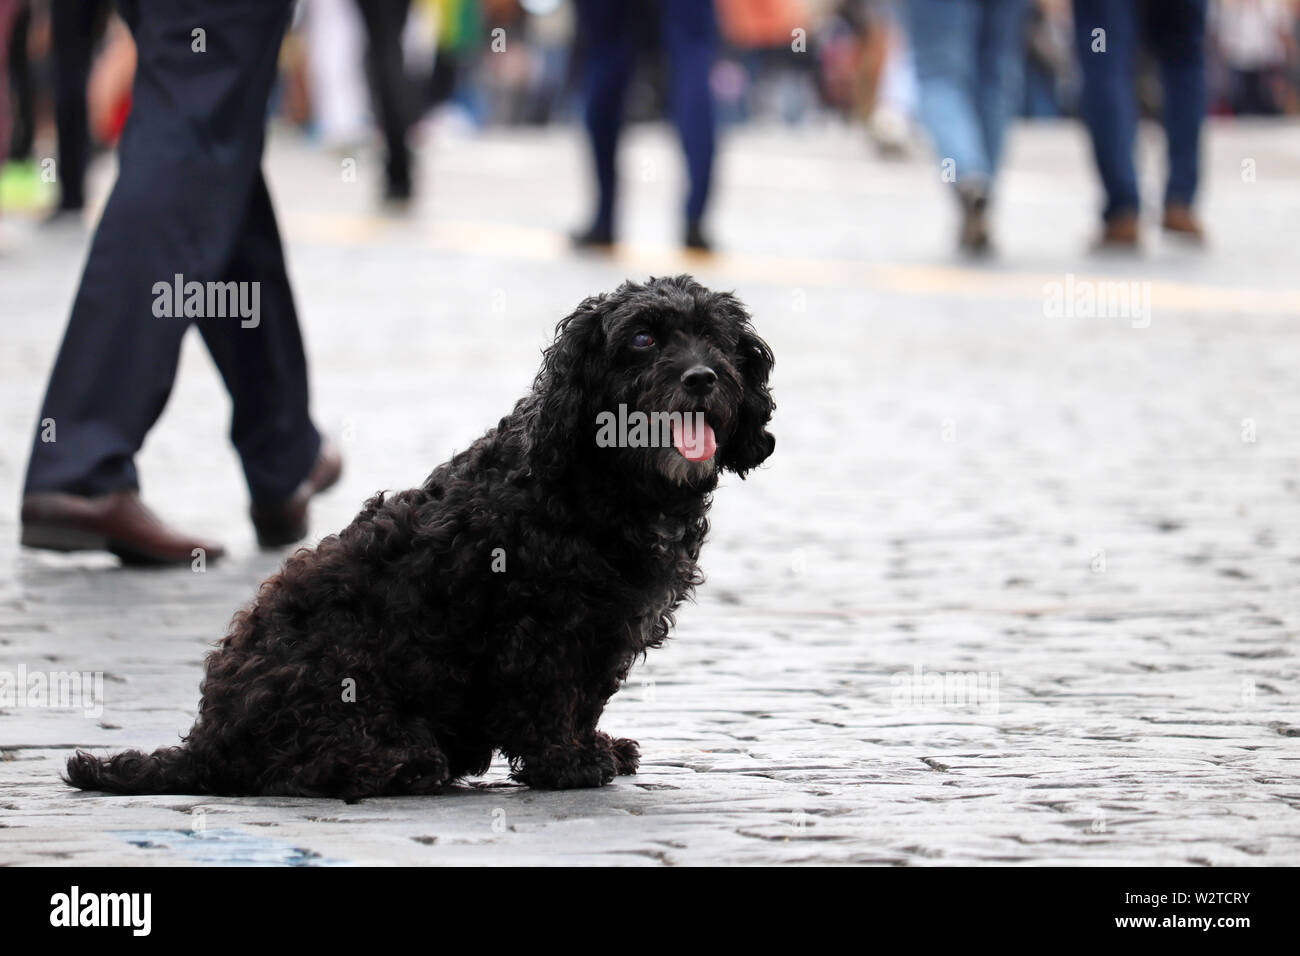 Perso cane nero seduto su una strada di città in mezzo alla folla di persone Foto Stock